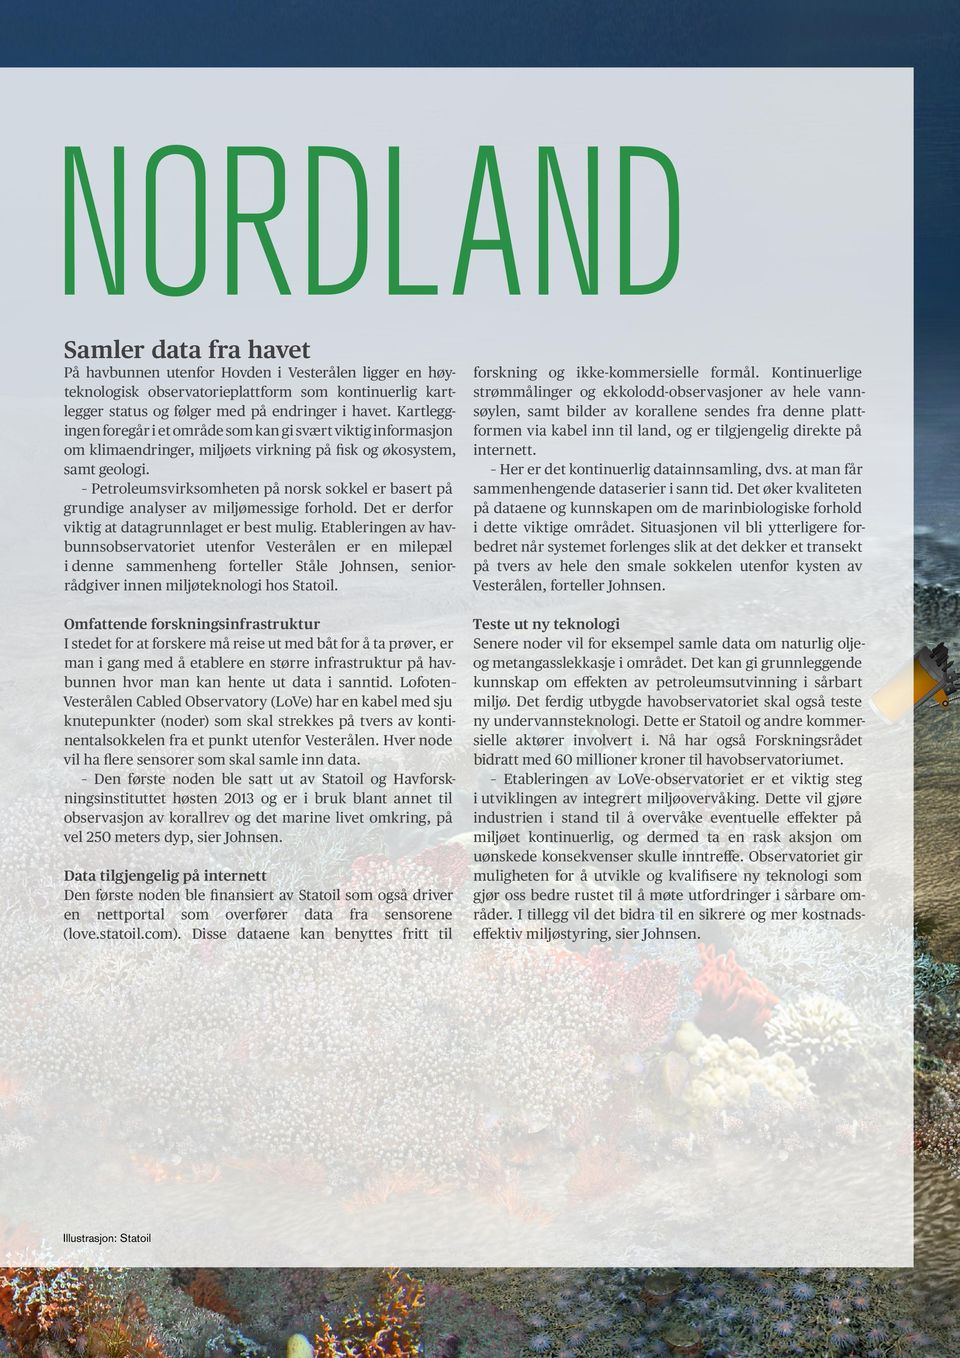 Petroleumsvirksomheten på norsk sokkel er basert på grundige analyser av miljømessige forhold. Det er derfor viktig at datagrunnlaget er best mulig.